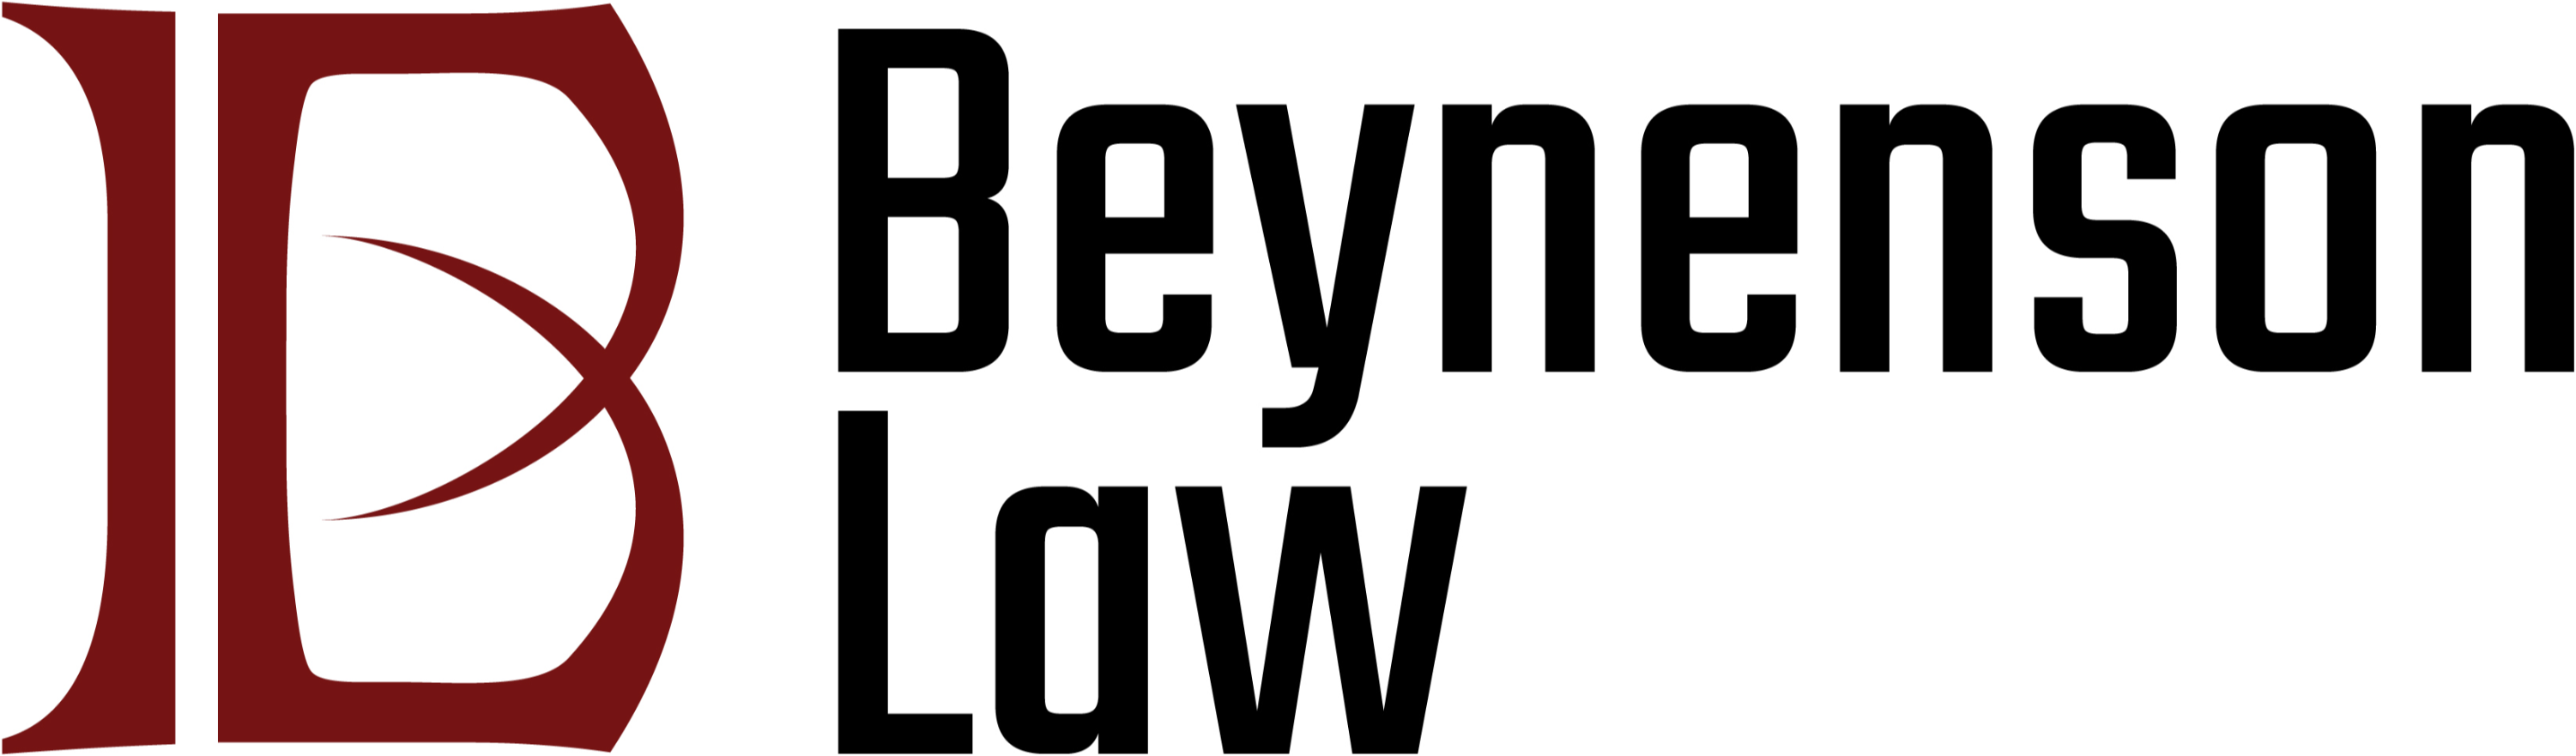 Beynenson Law